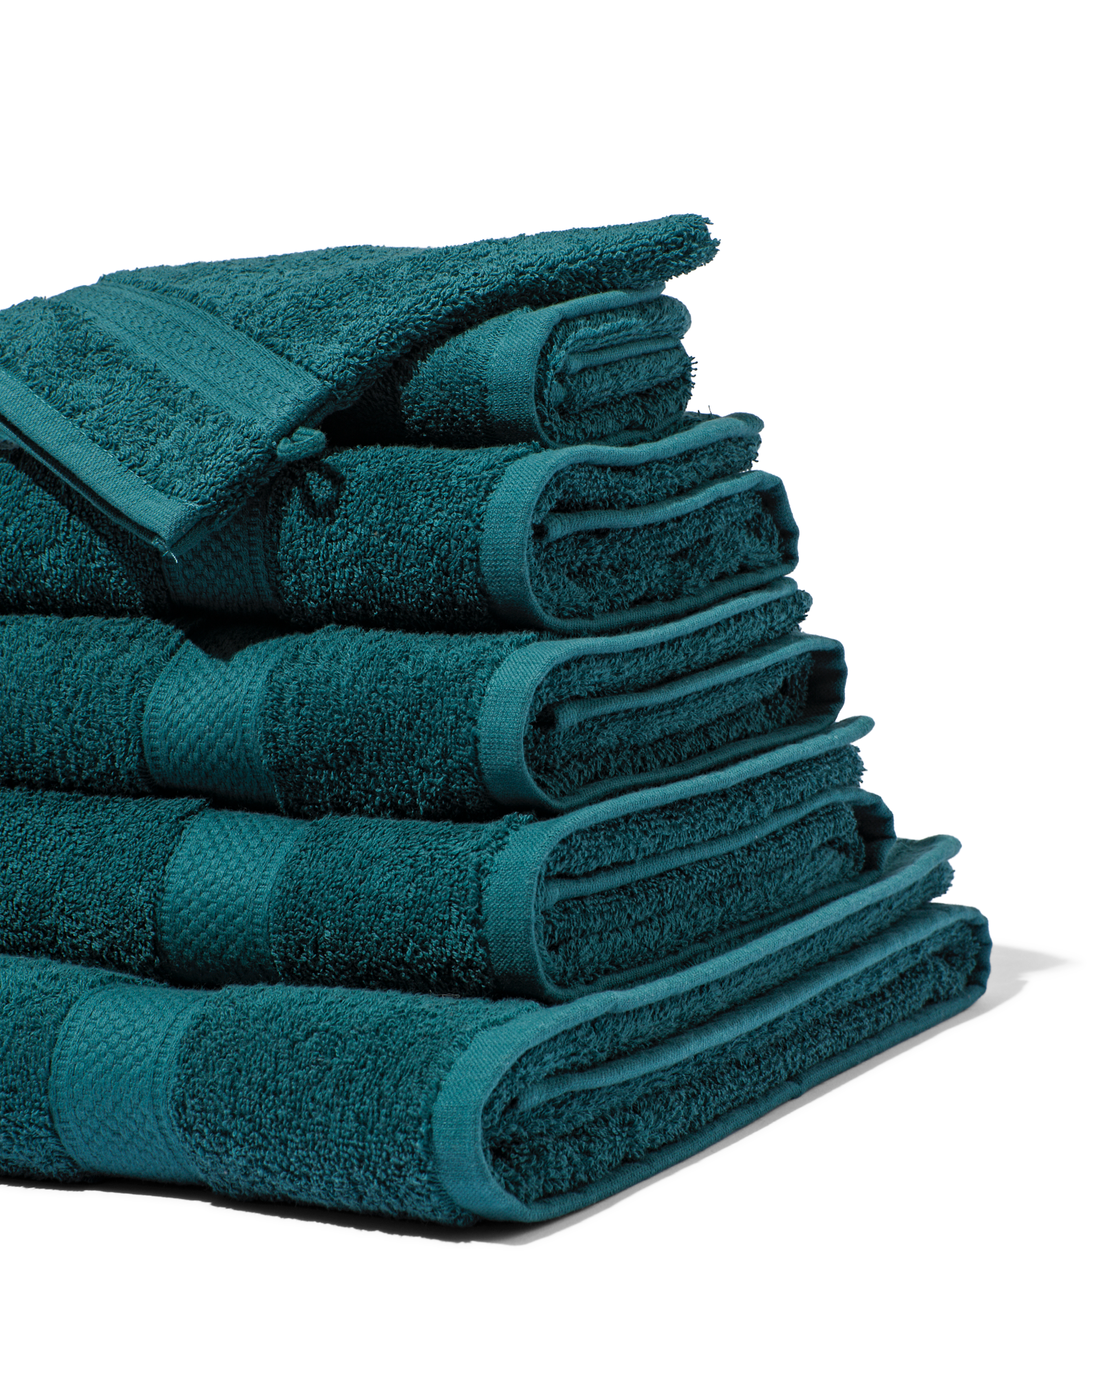 HEMA Handdoeken - Zware Kwaliteit Donkergroen (donkergroen)